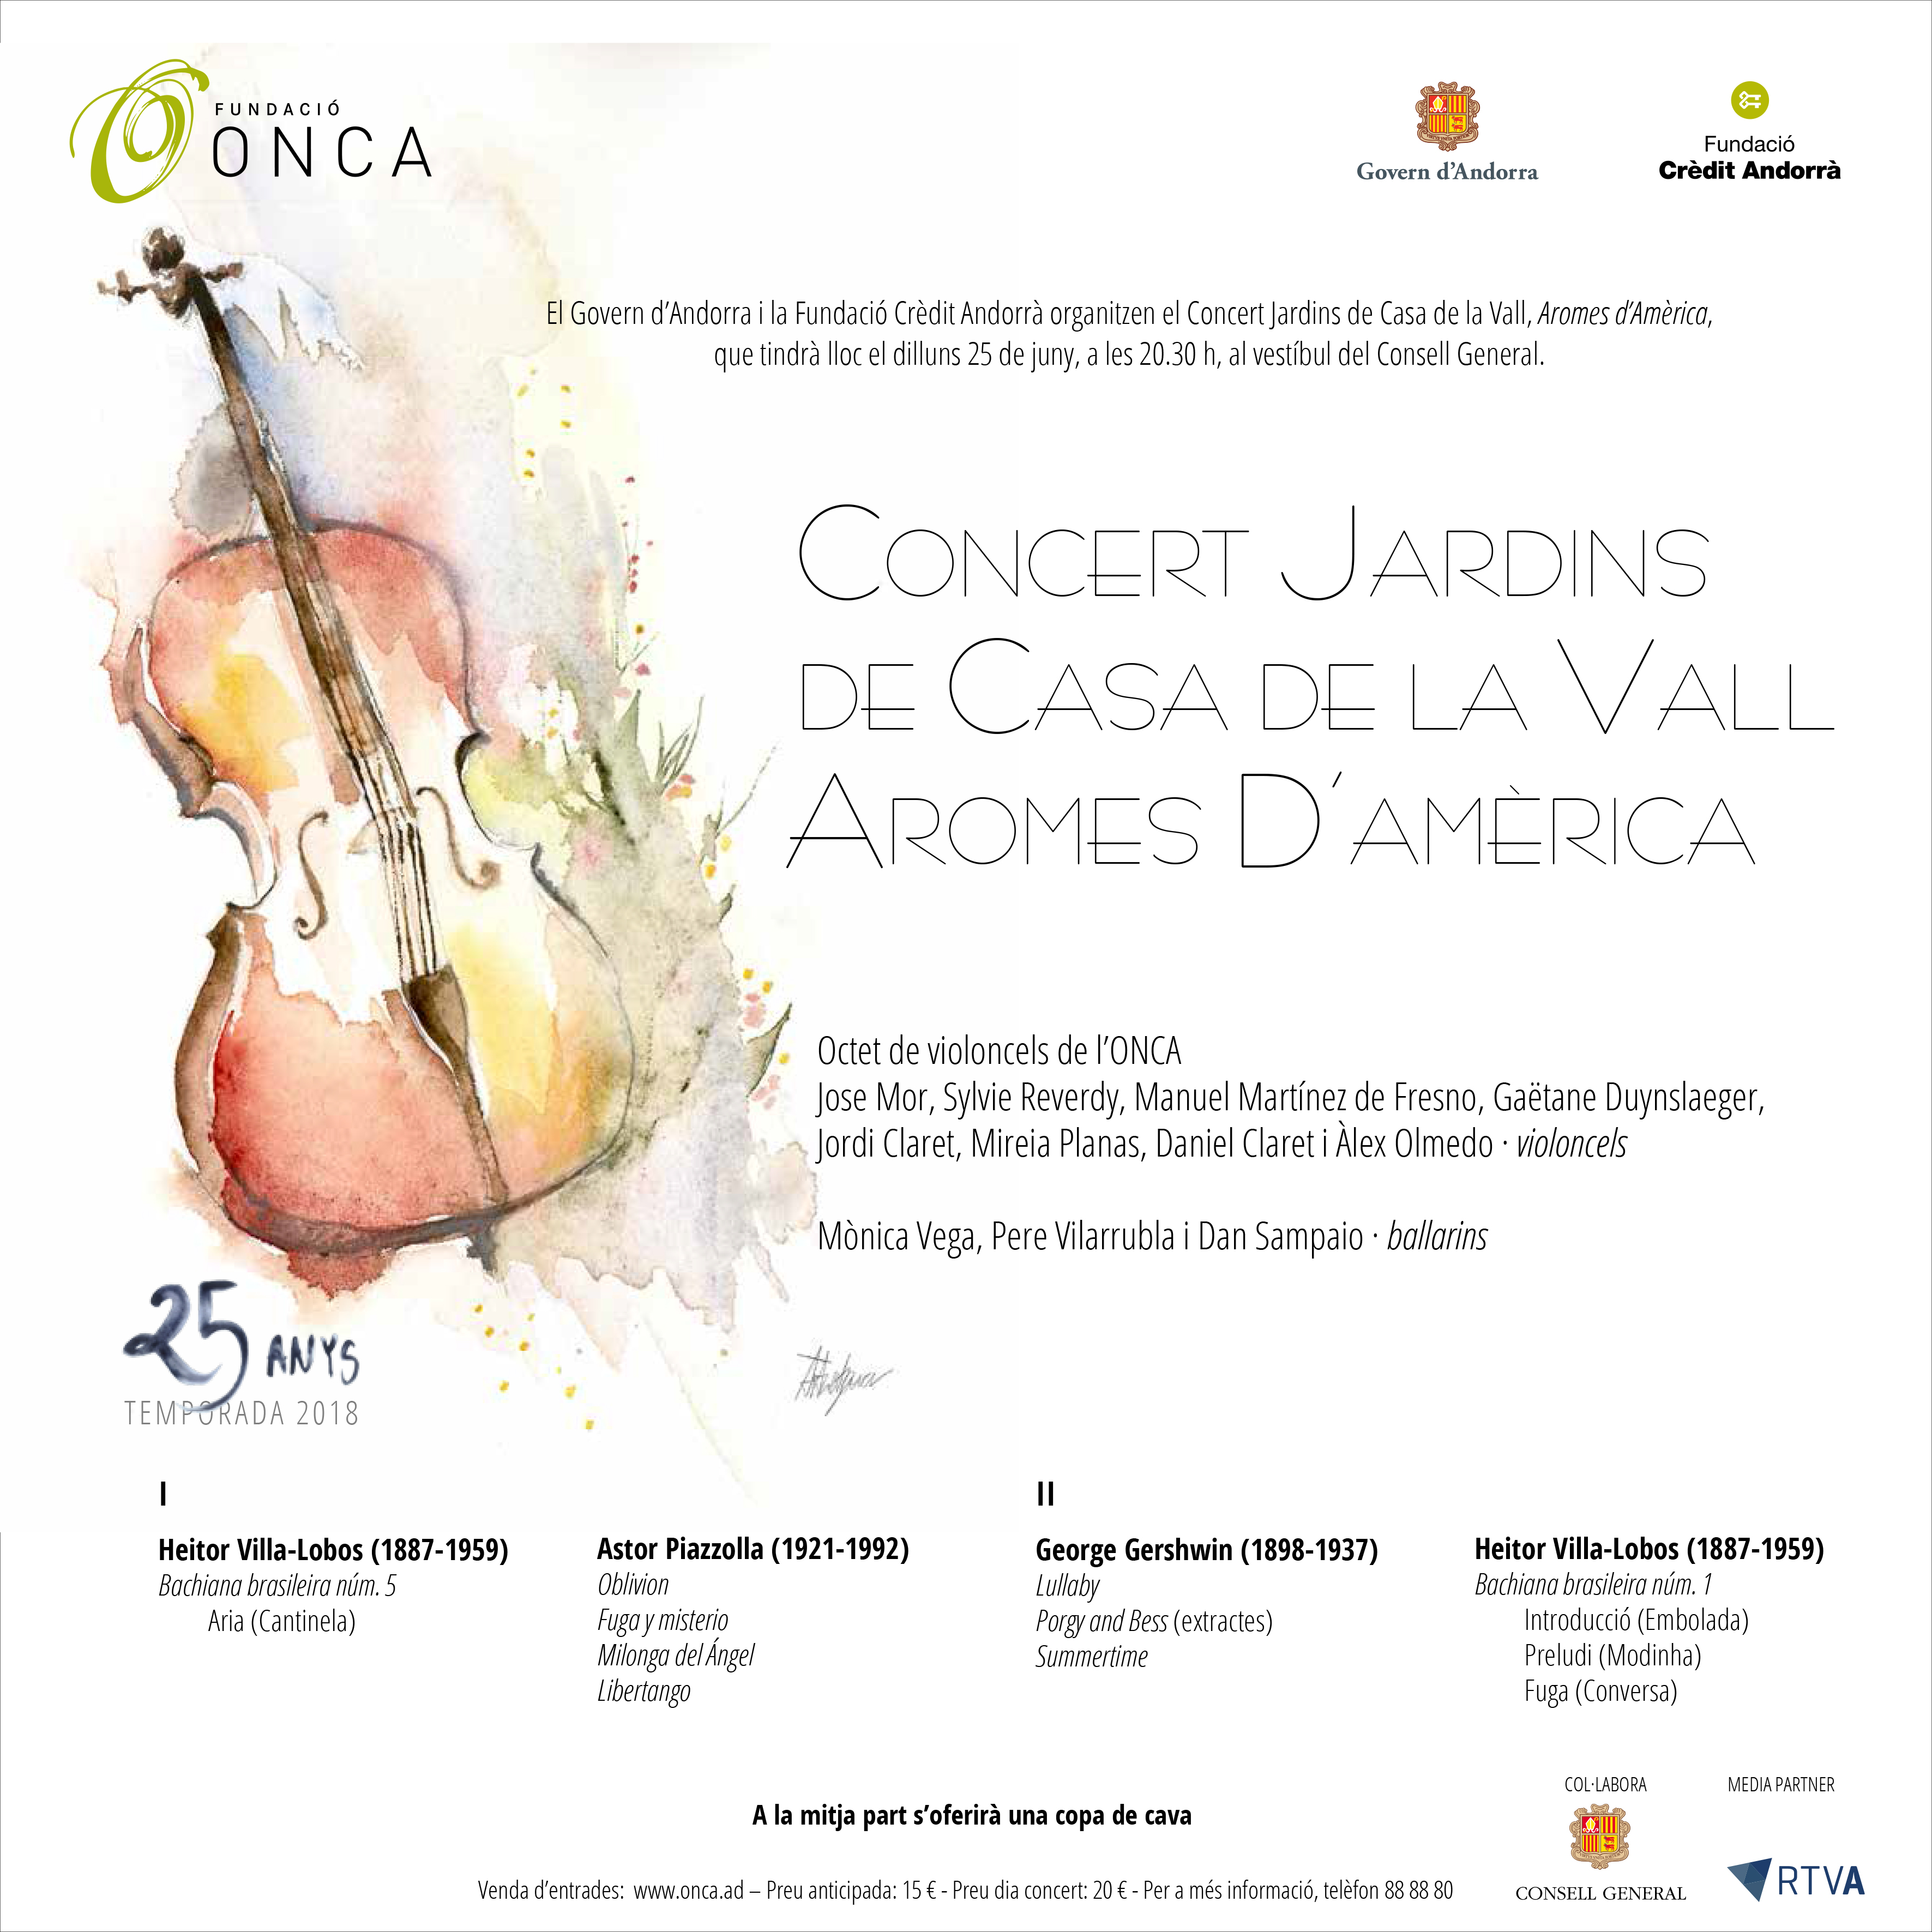 Concert Jardins de Casa de la Vall: “Aromes d’Amèrica”